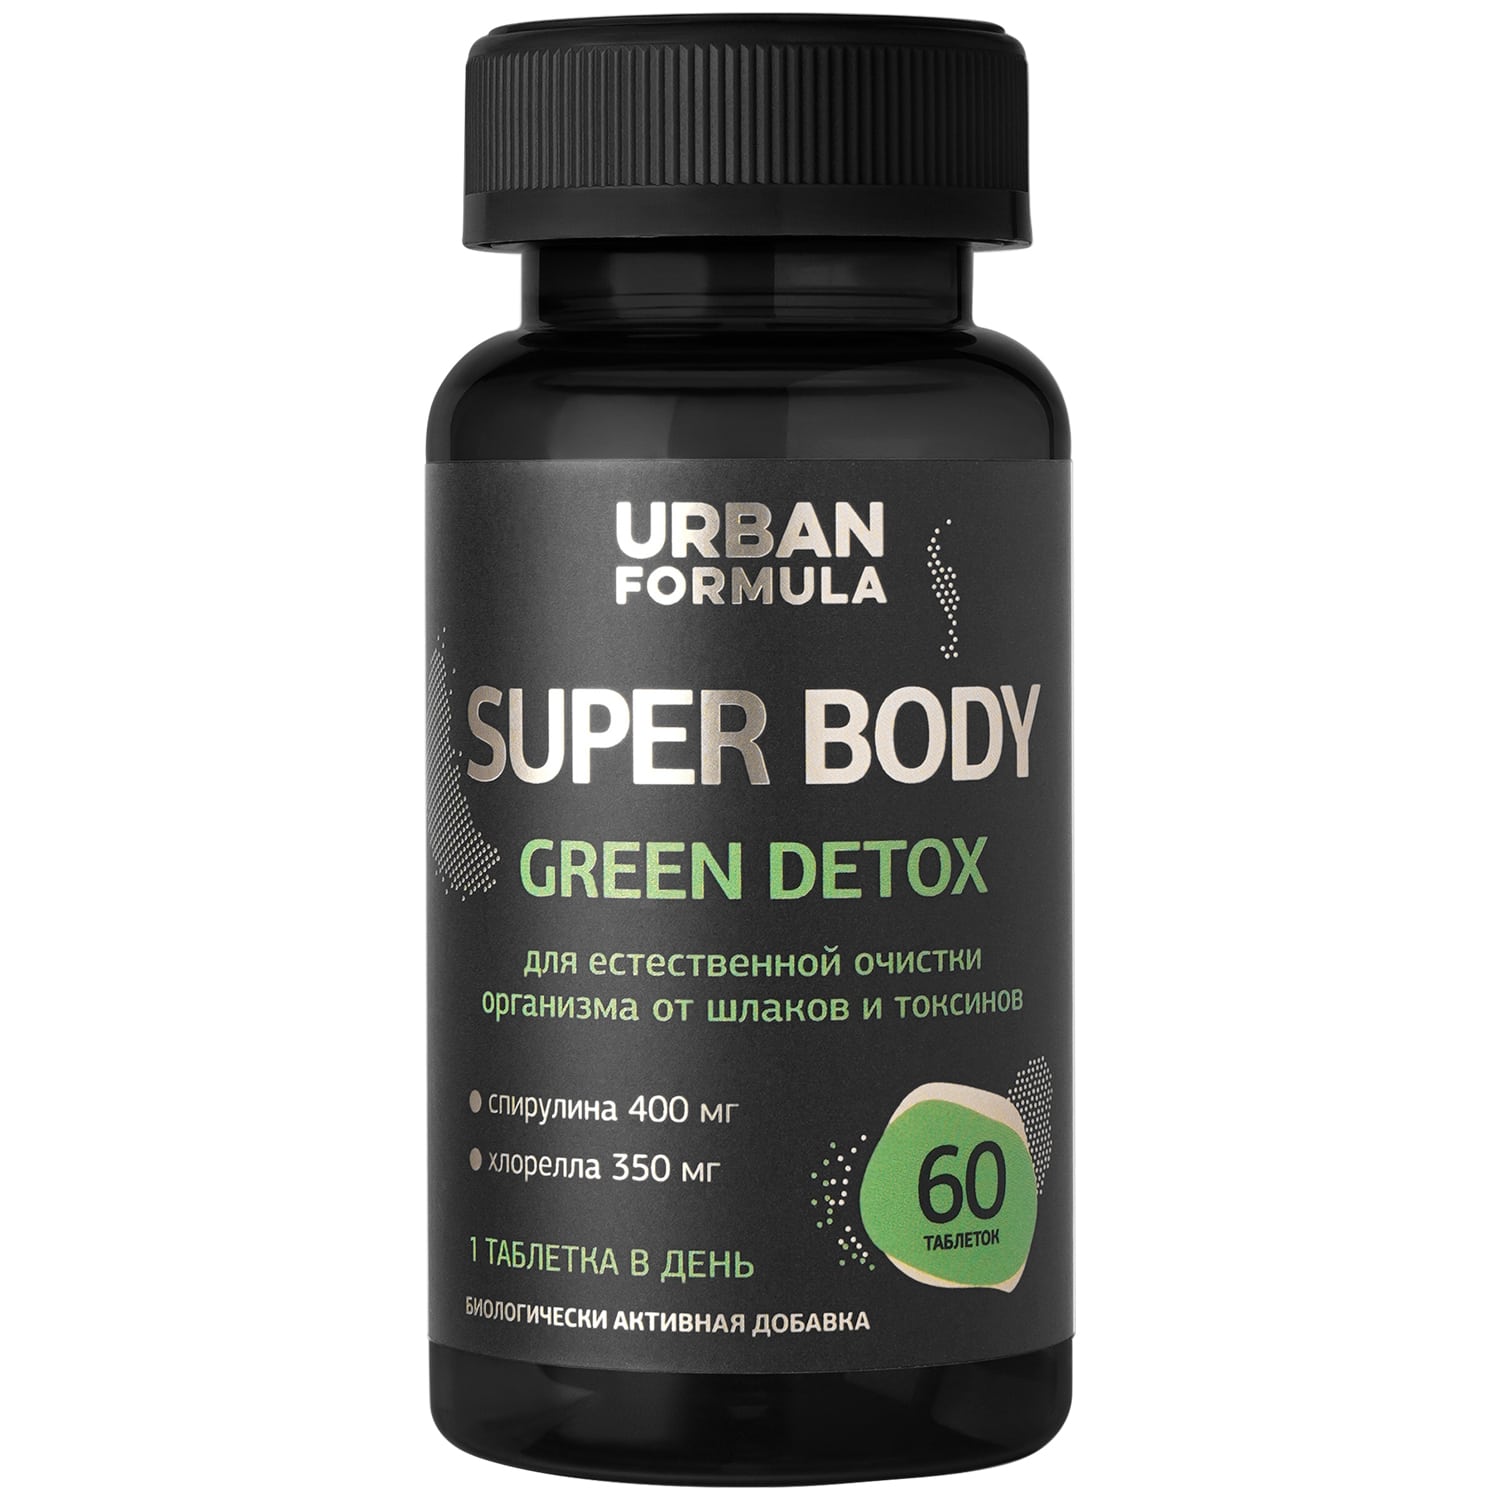 Urban Formula Комплекс на растительной основе Green Detox, 60 таблеток (Urban Formula, Super Body) urban formula super body slim extreme